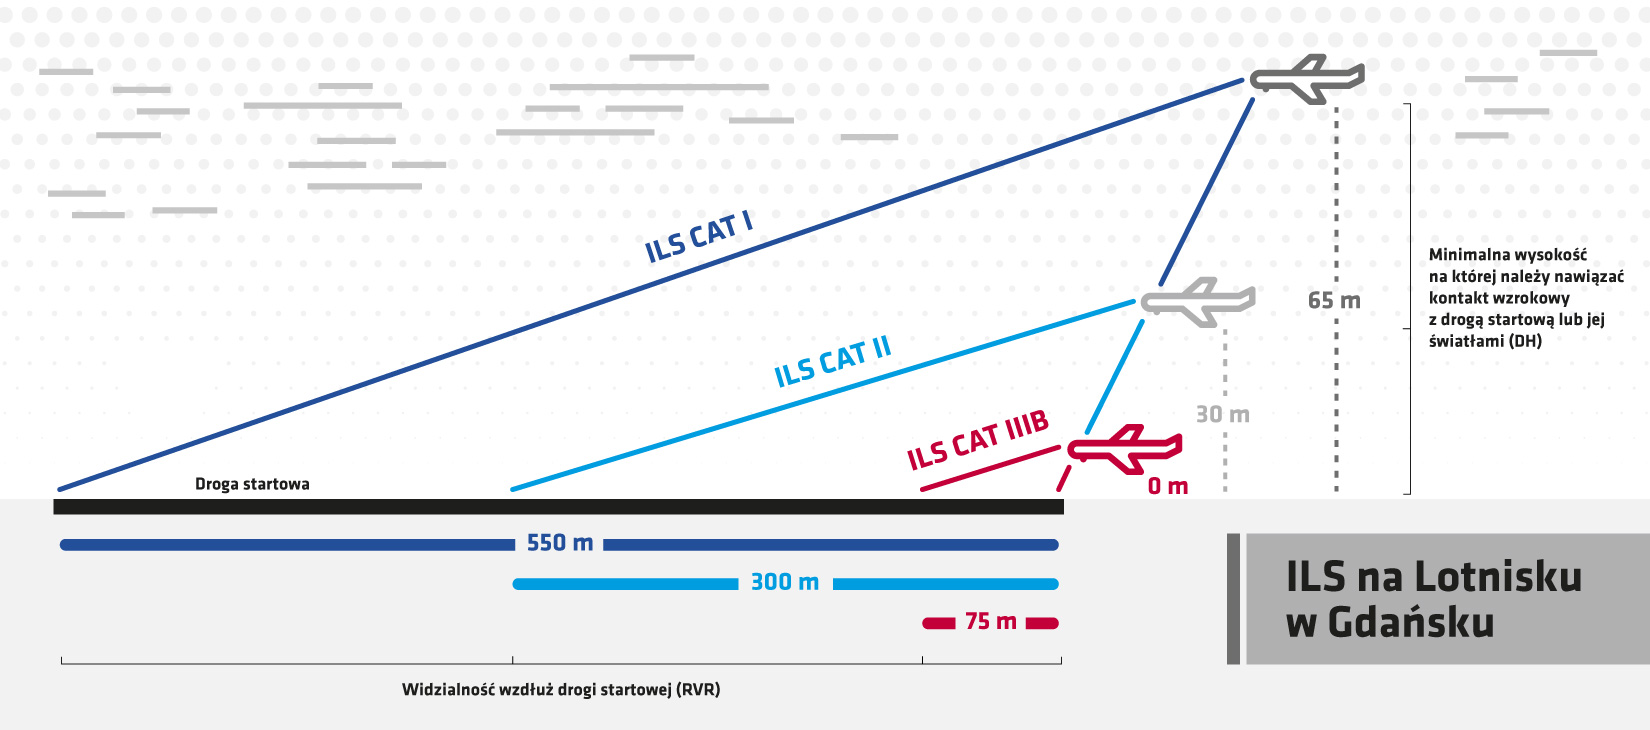 Rys. Parametry poszczególnych kategorii systemu ILS na gdańskim lotnisku (DH - wysokość decyzji; RVR - widzialność wzdłuż drogi startowej), mat. prasowe